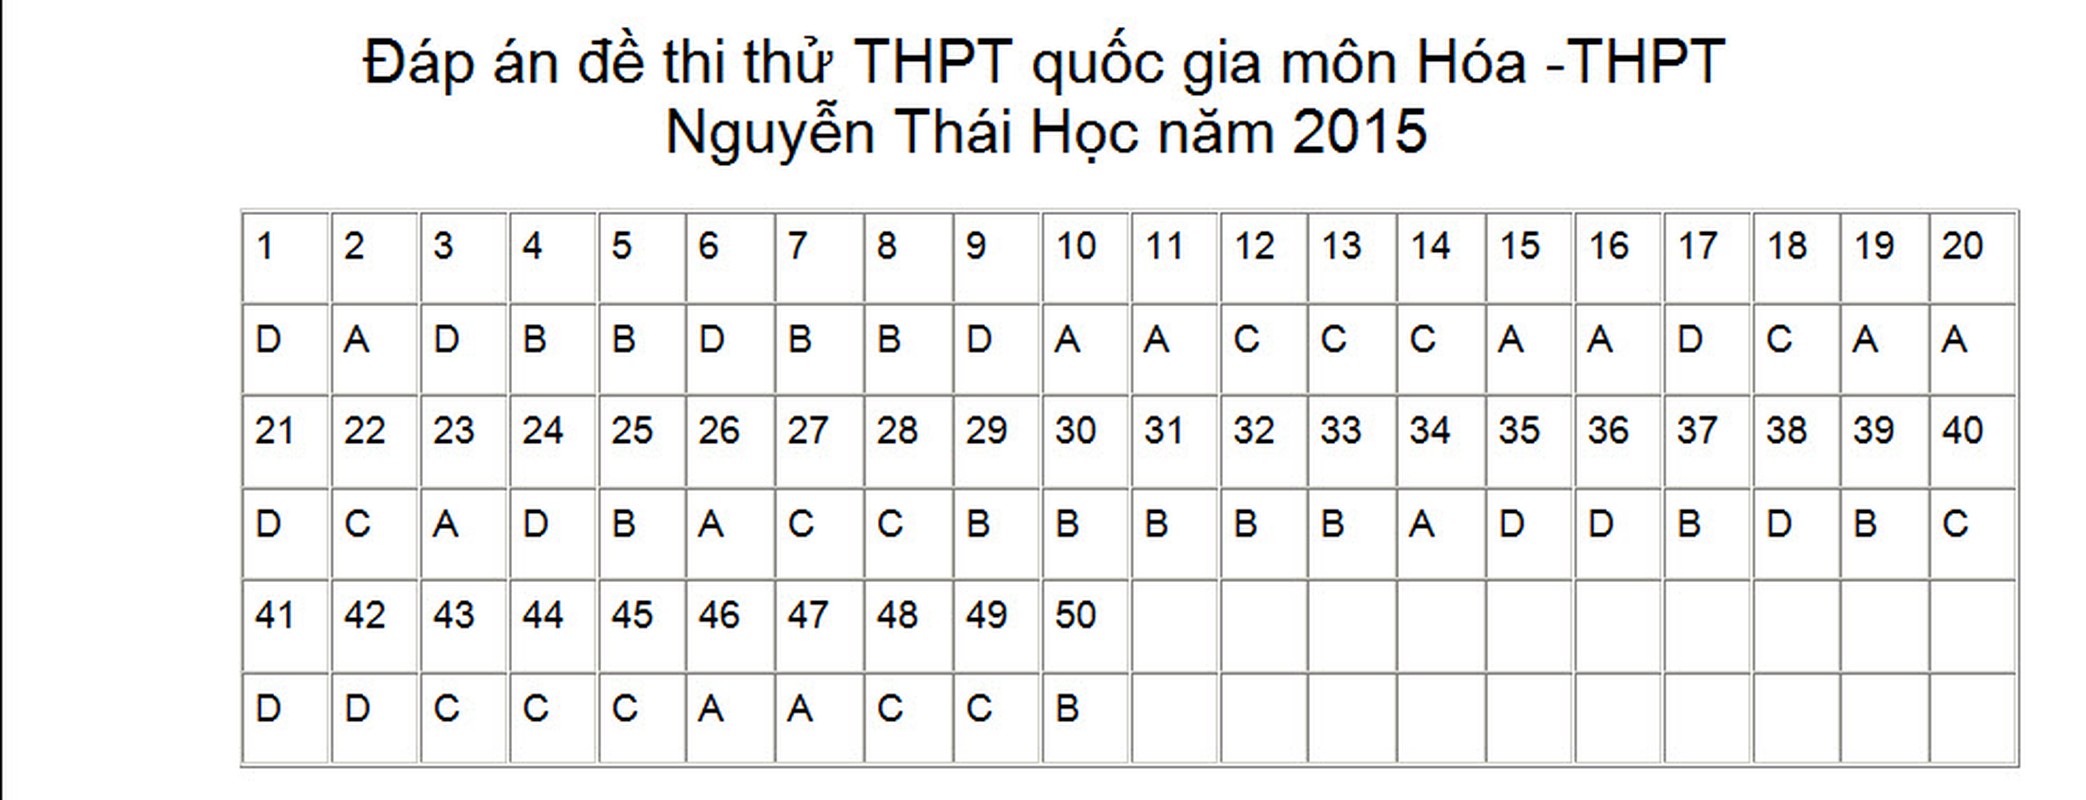 Dap an, de thi thu THPT quoc gia 2015 mon Hoa-Hinh-7